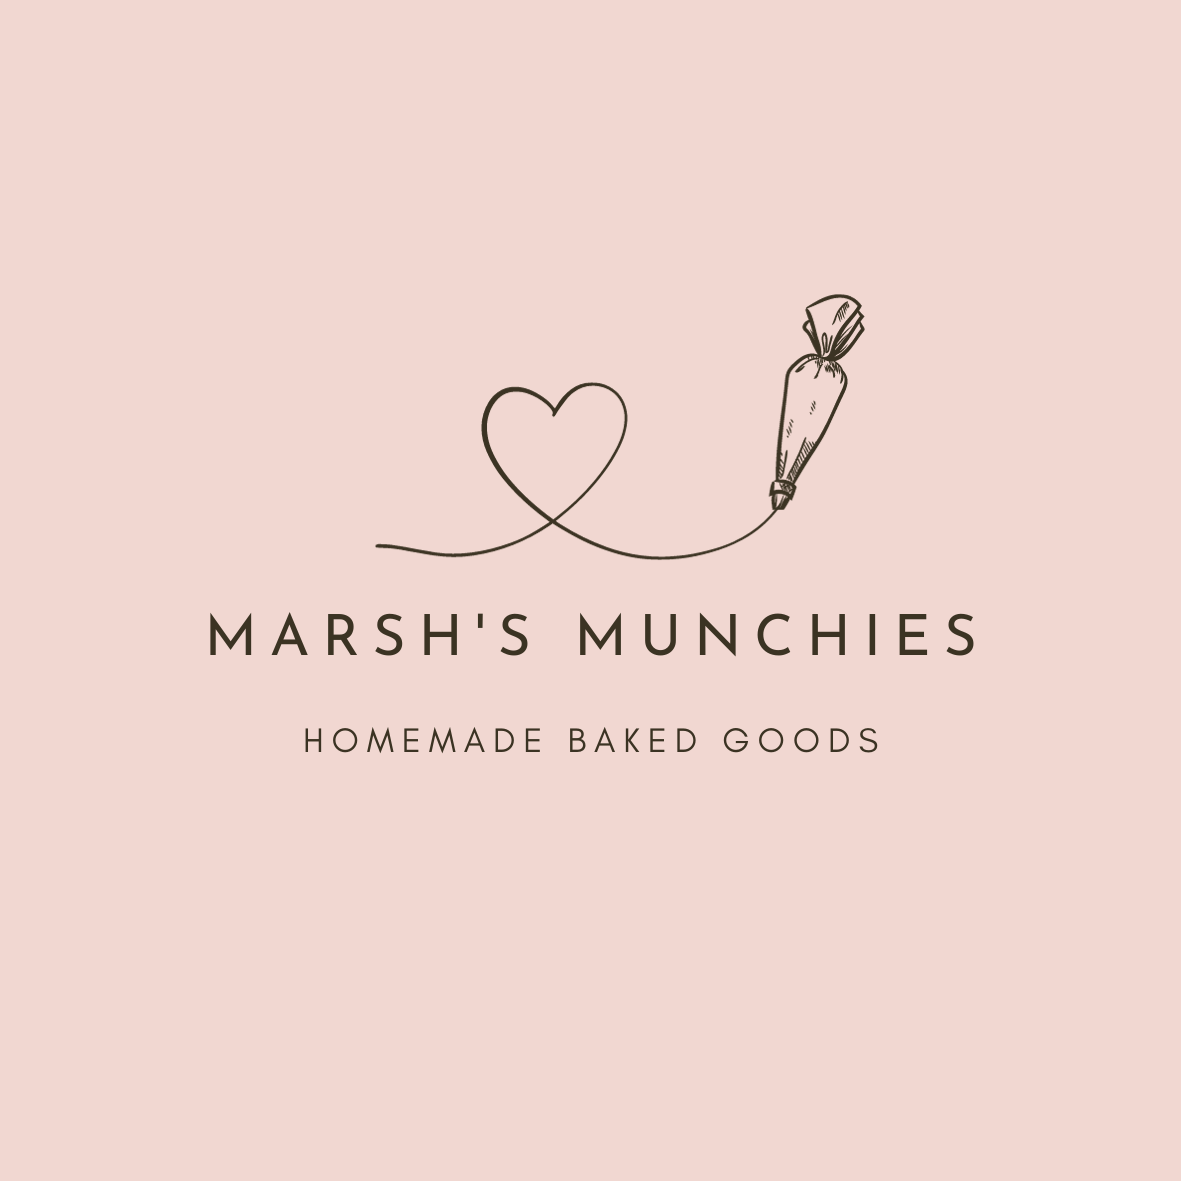 Marsh's Munchies